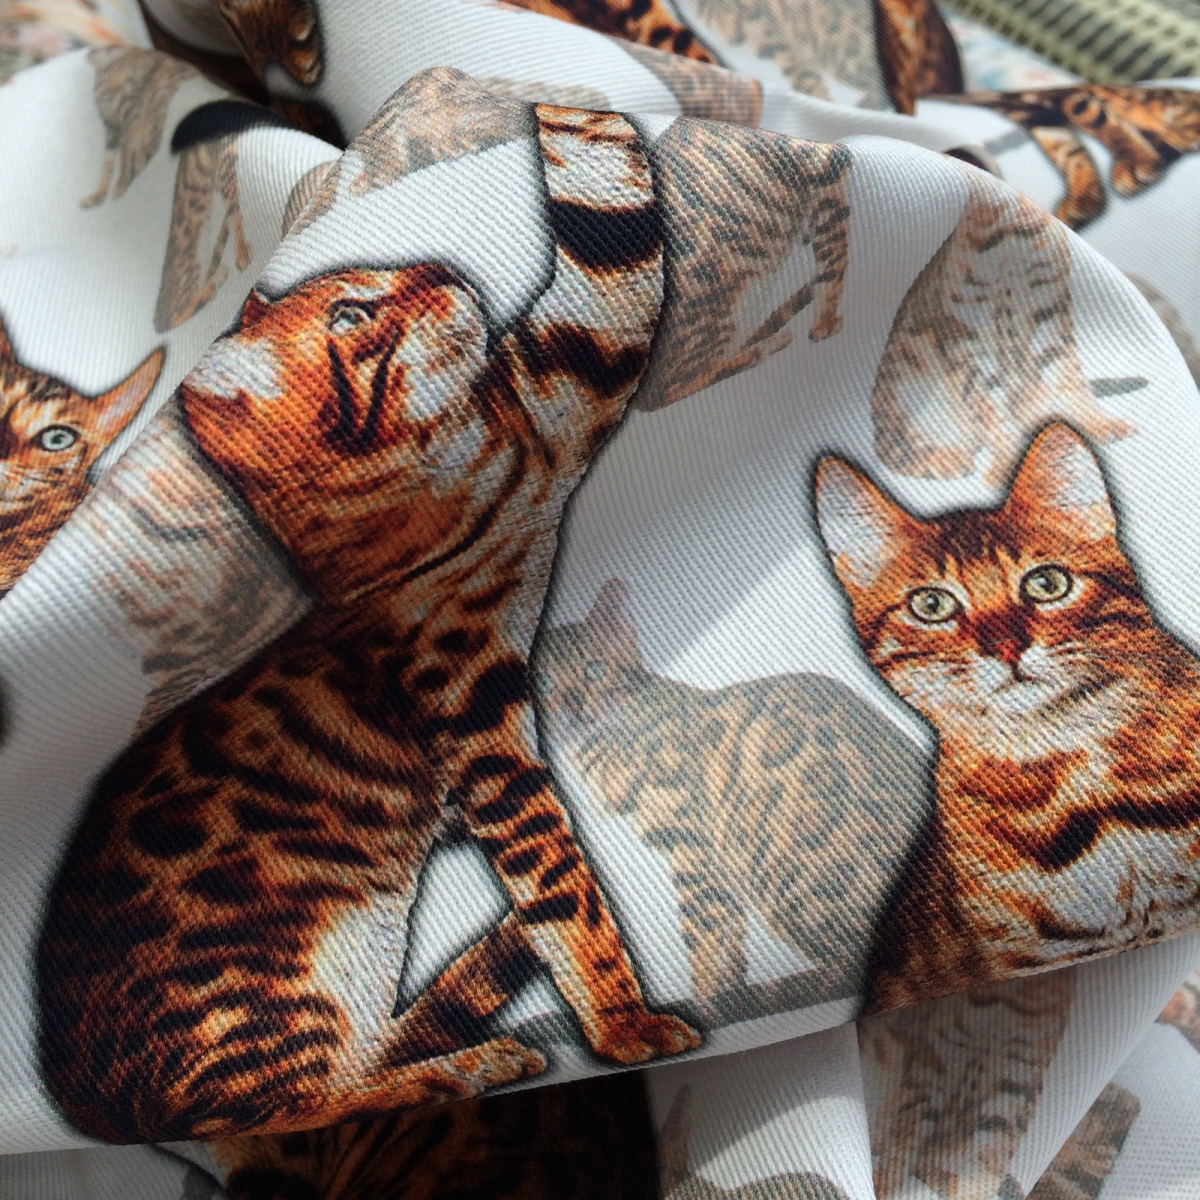 Ткань кошки купить. Ткань с котами. Ткань с кошечками. Ткань с принтом коты. Ткани с принтом животных.